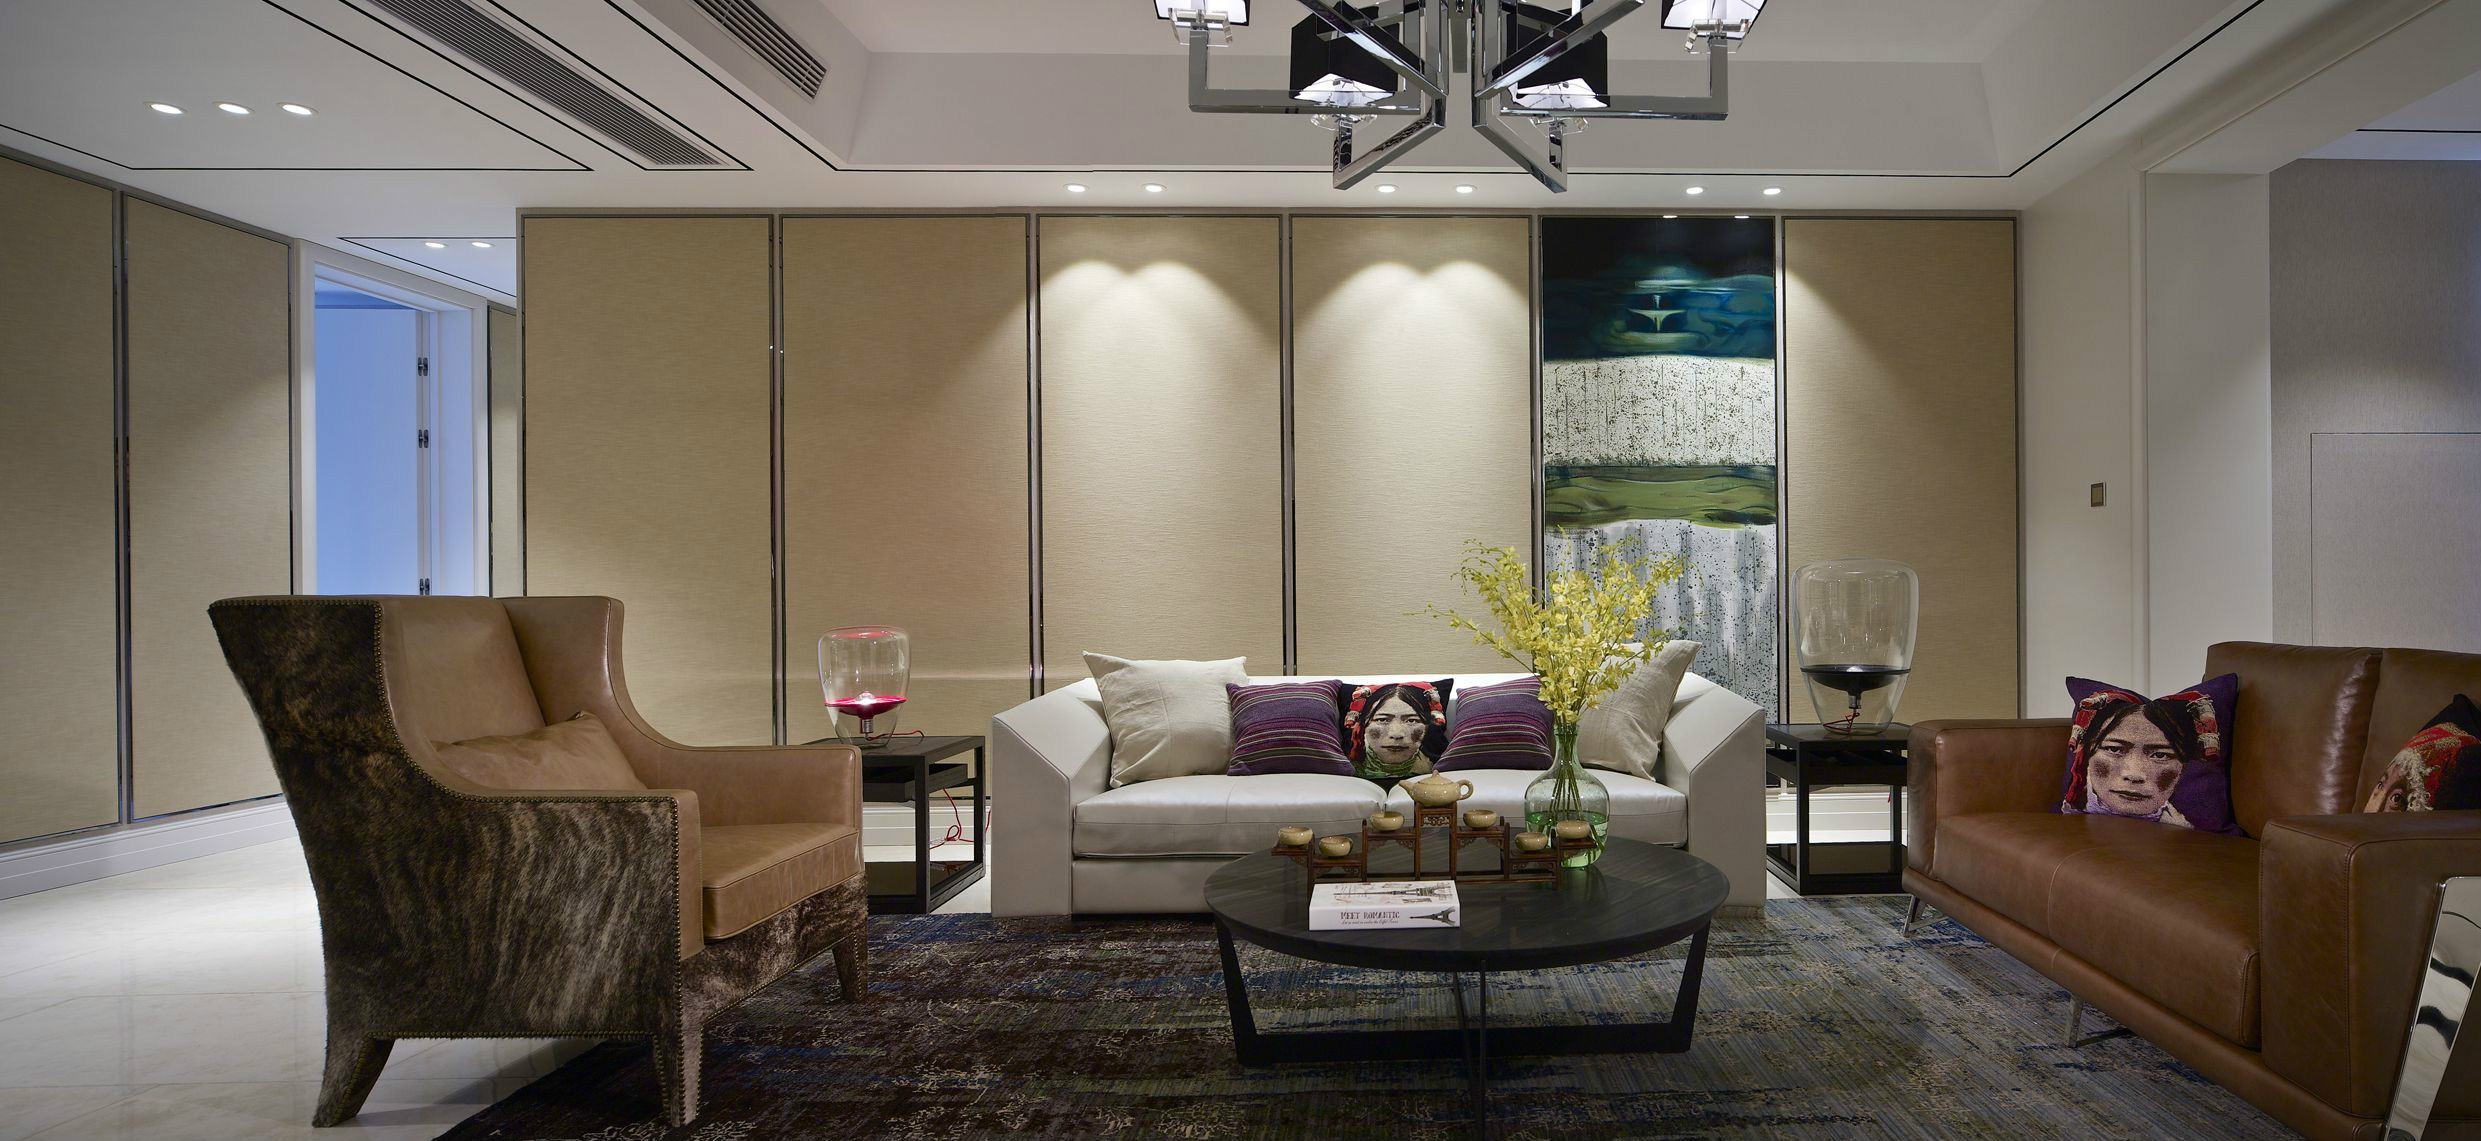 客厅的设计可谓典雅静谧，美式家具搭配简易大方的背景墙，彰显美式风情。